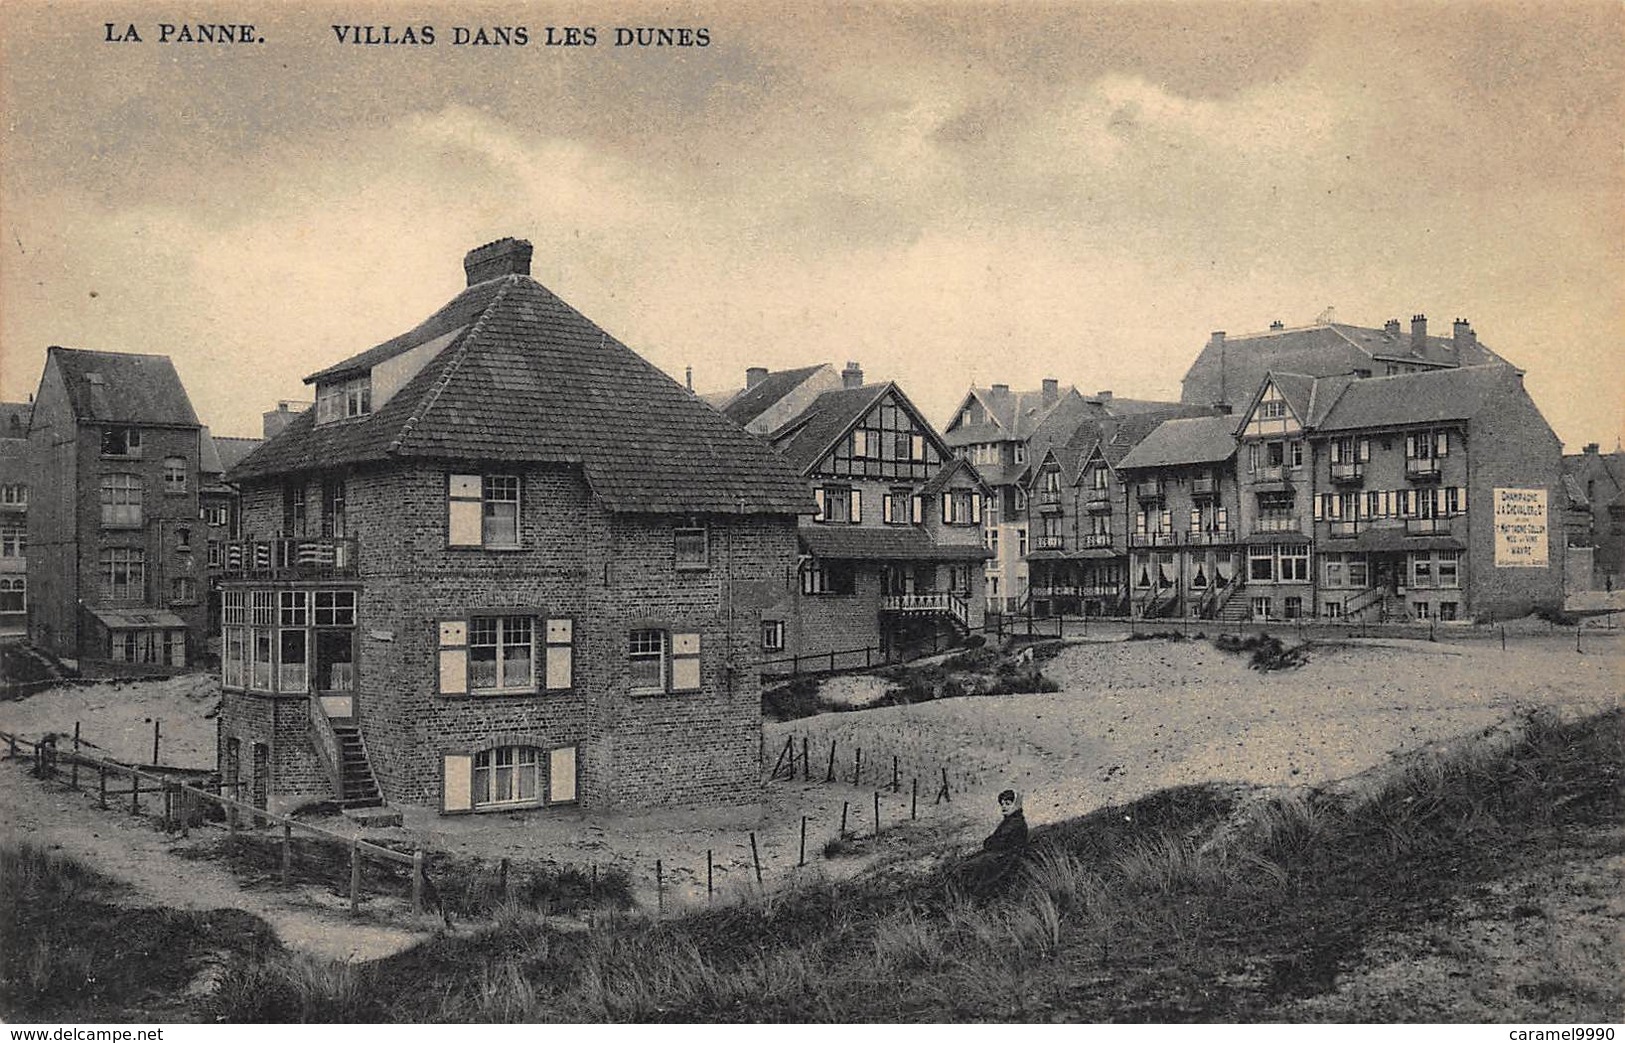 De Panne LA PANNE België verzameling van 46 verschillende prachtige kaarten van Hotel tot villa. Oude kaarten! Lot 2